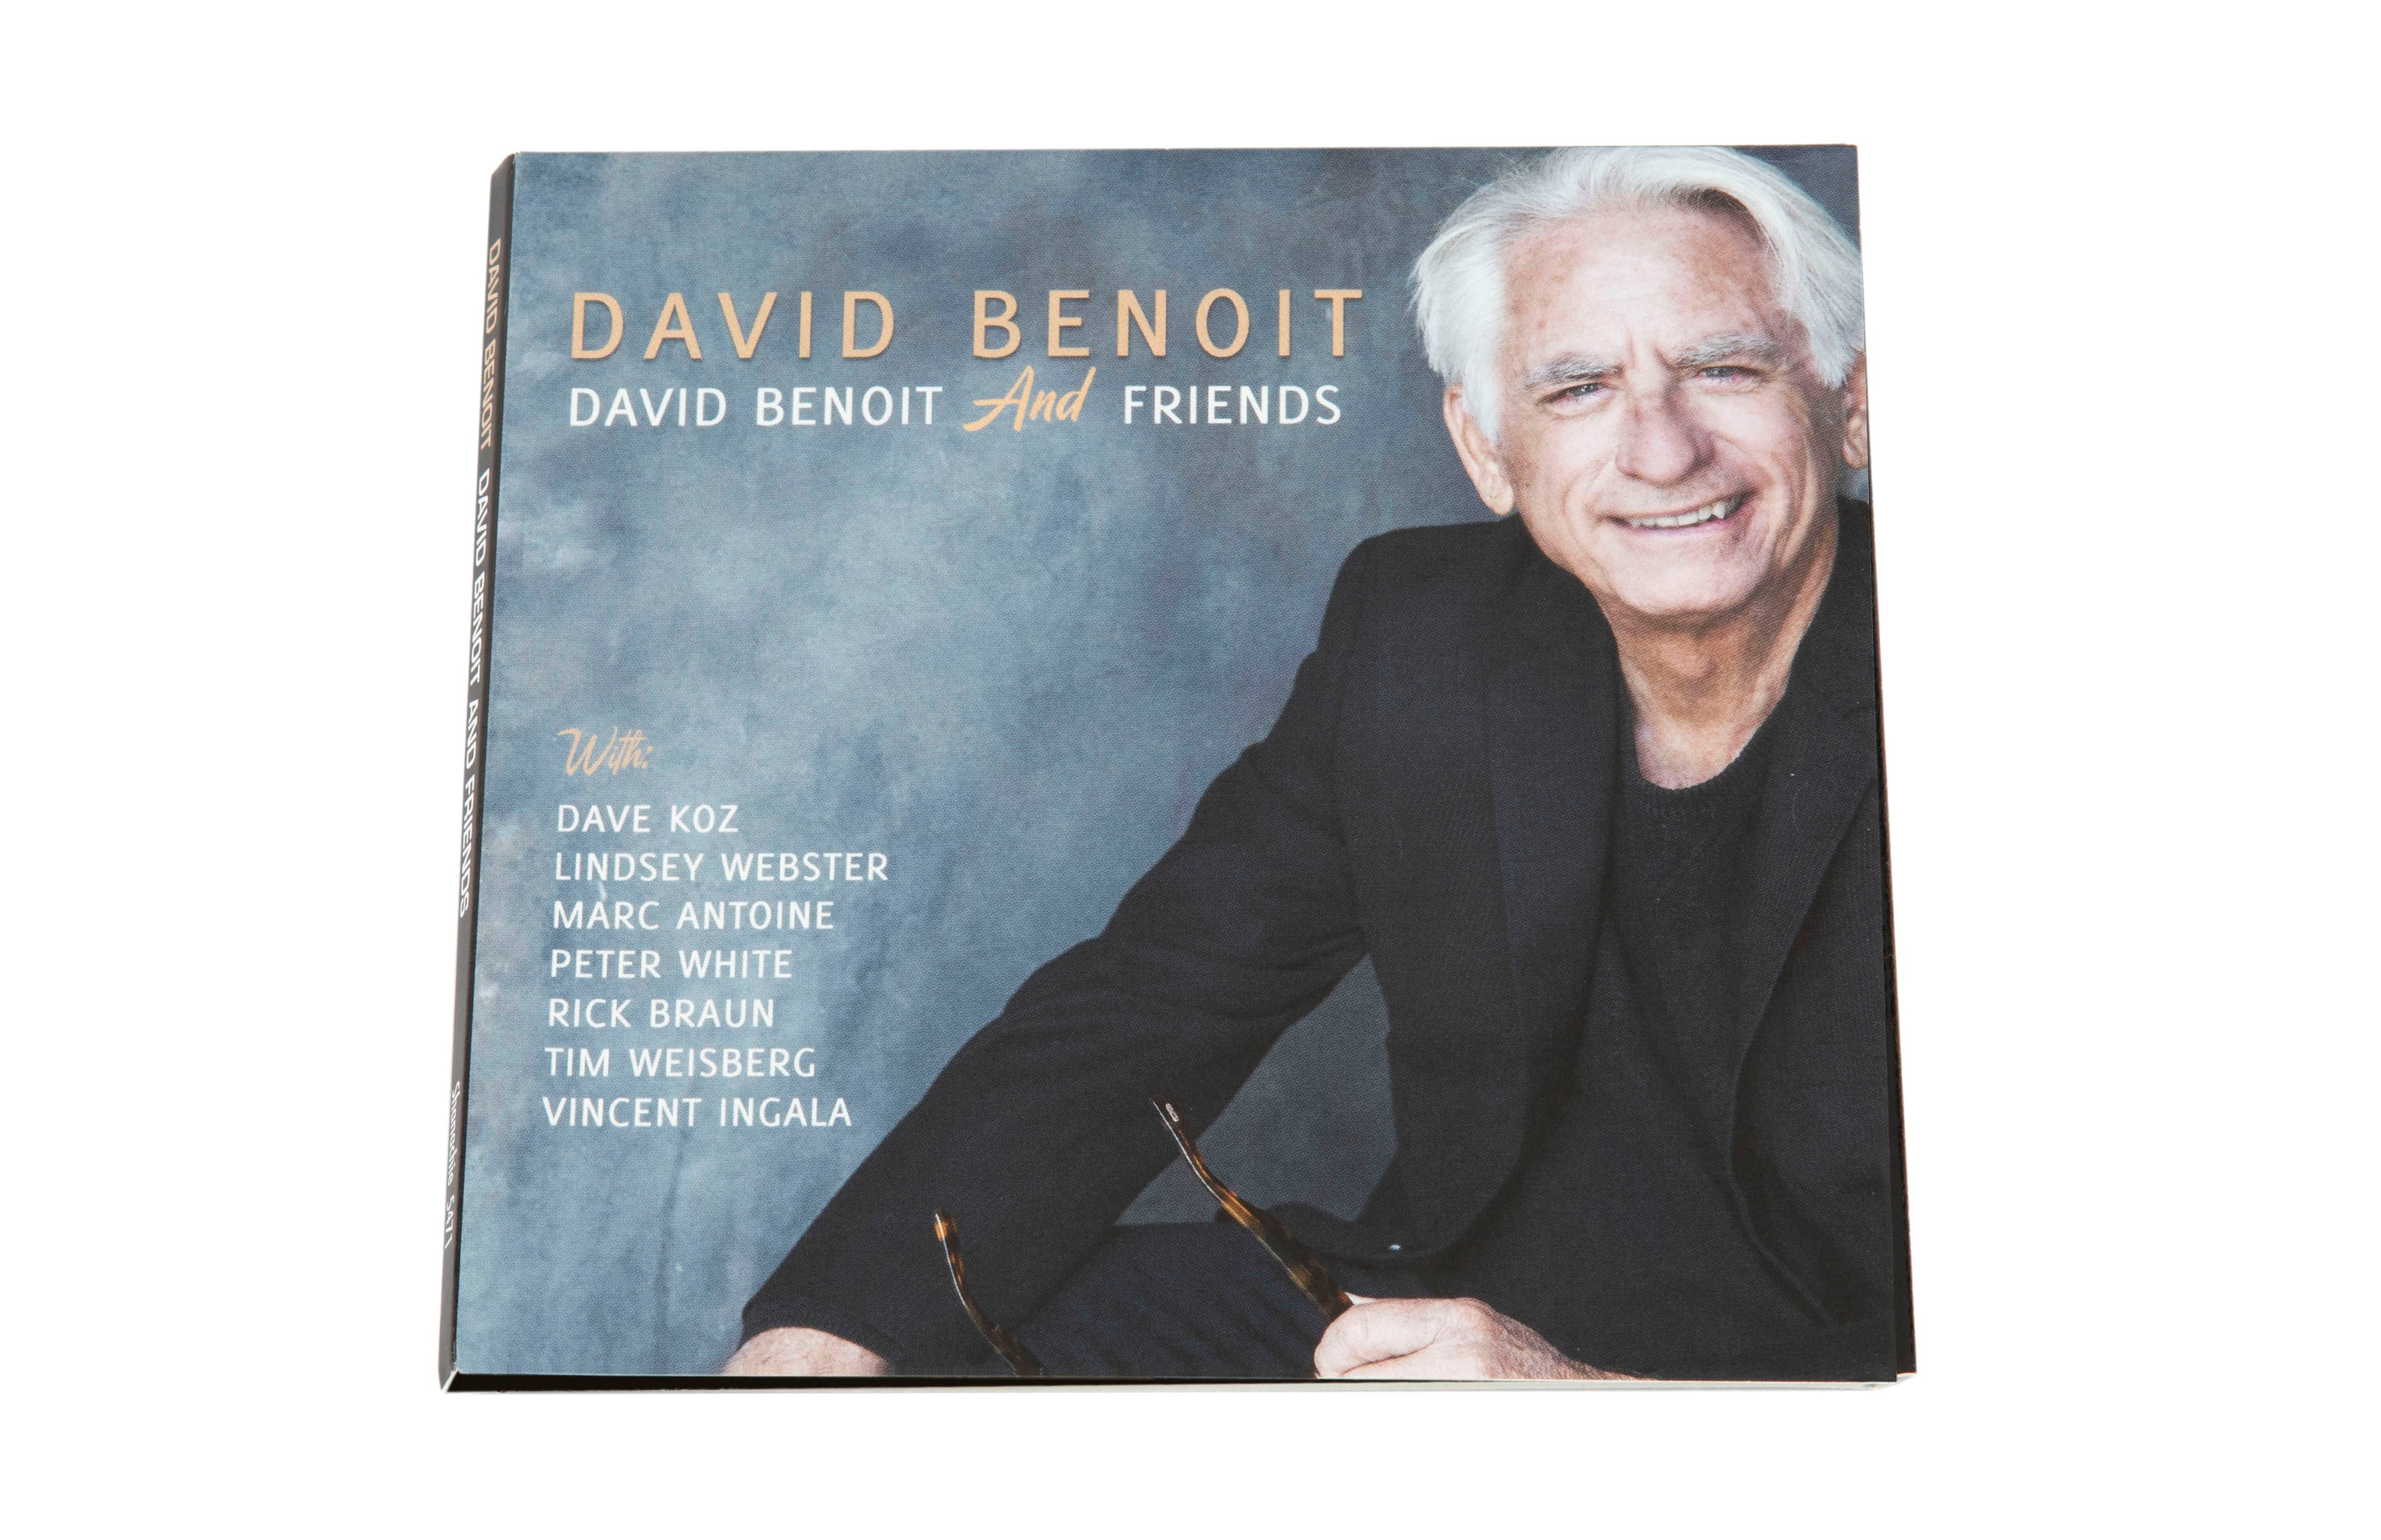 David Benoit & Friends Music CD